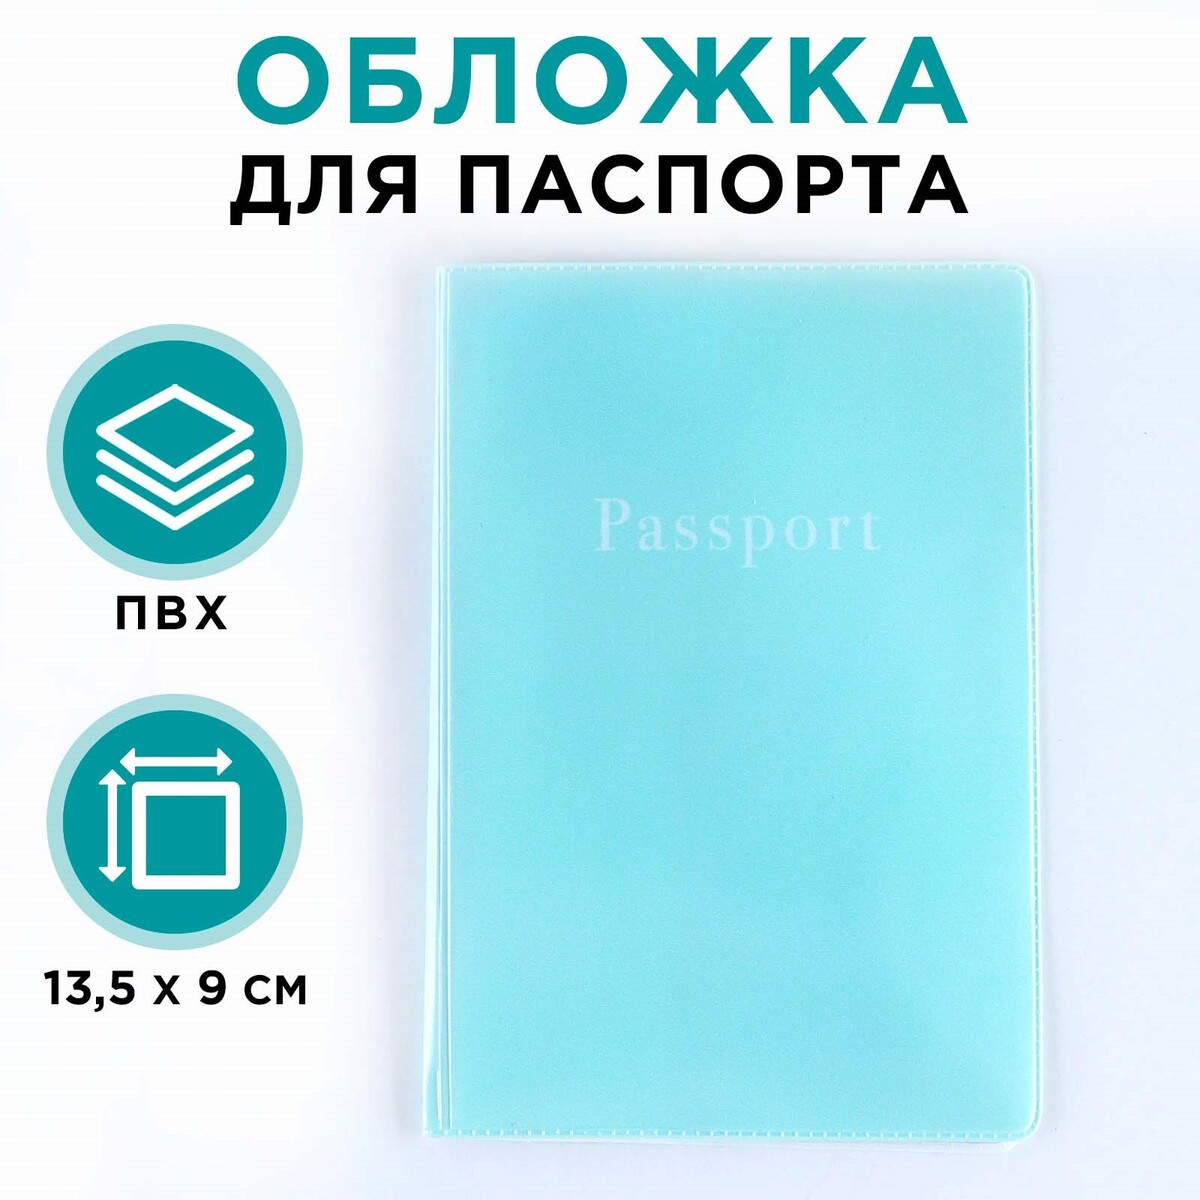 Обложка для паспорта, пвх, цвет нежно-бирюзовый No brand